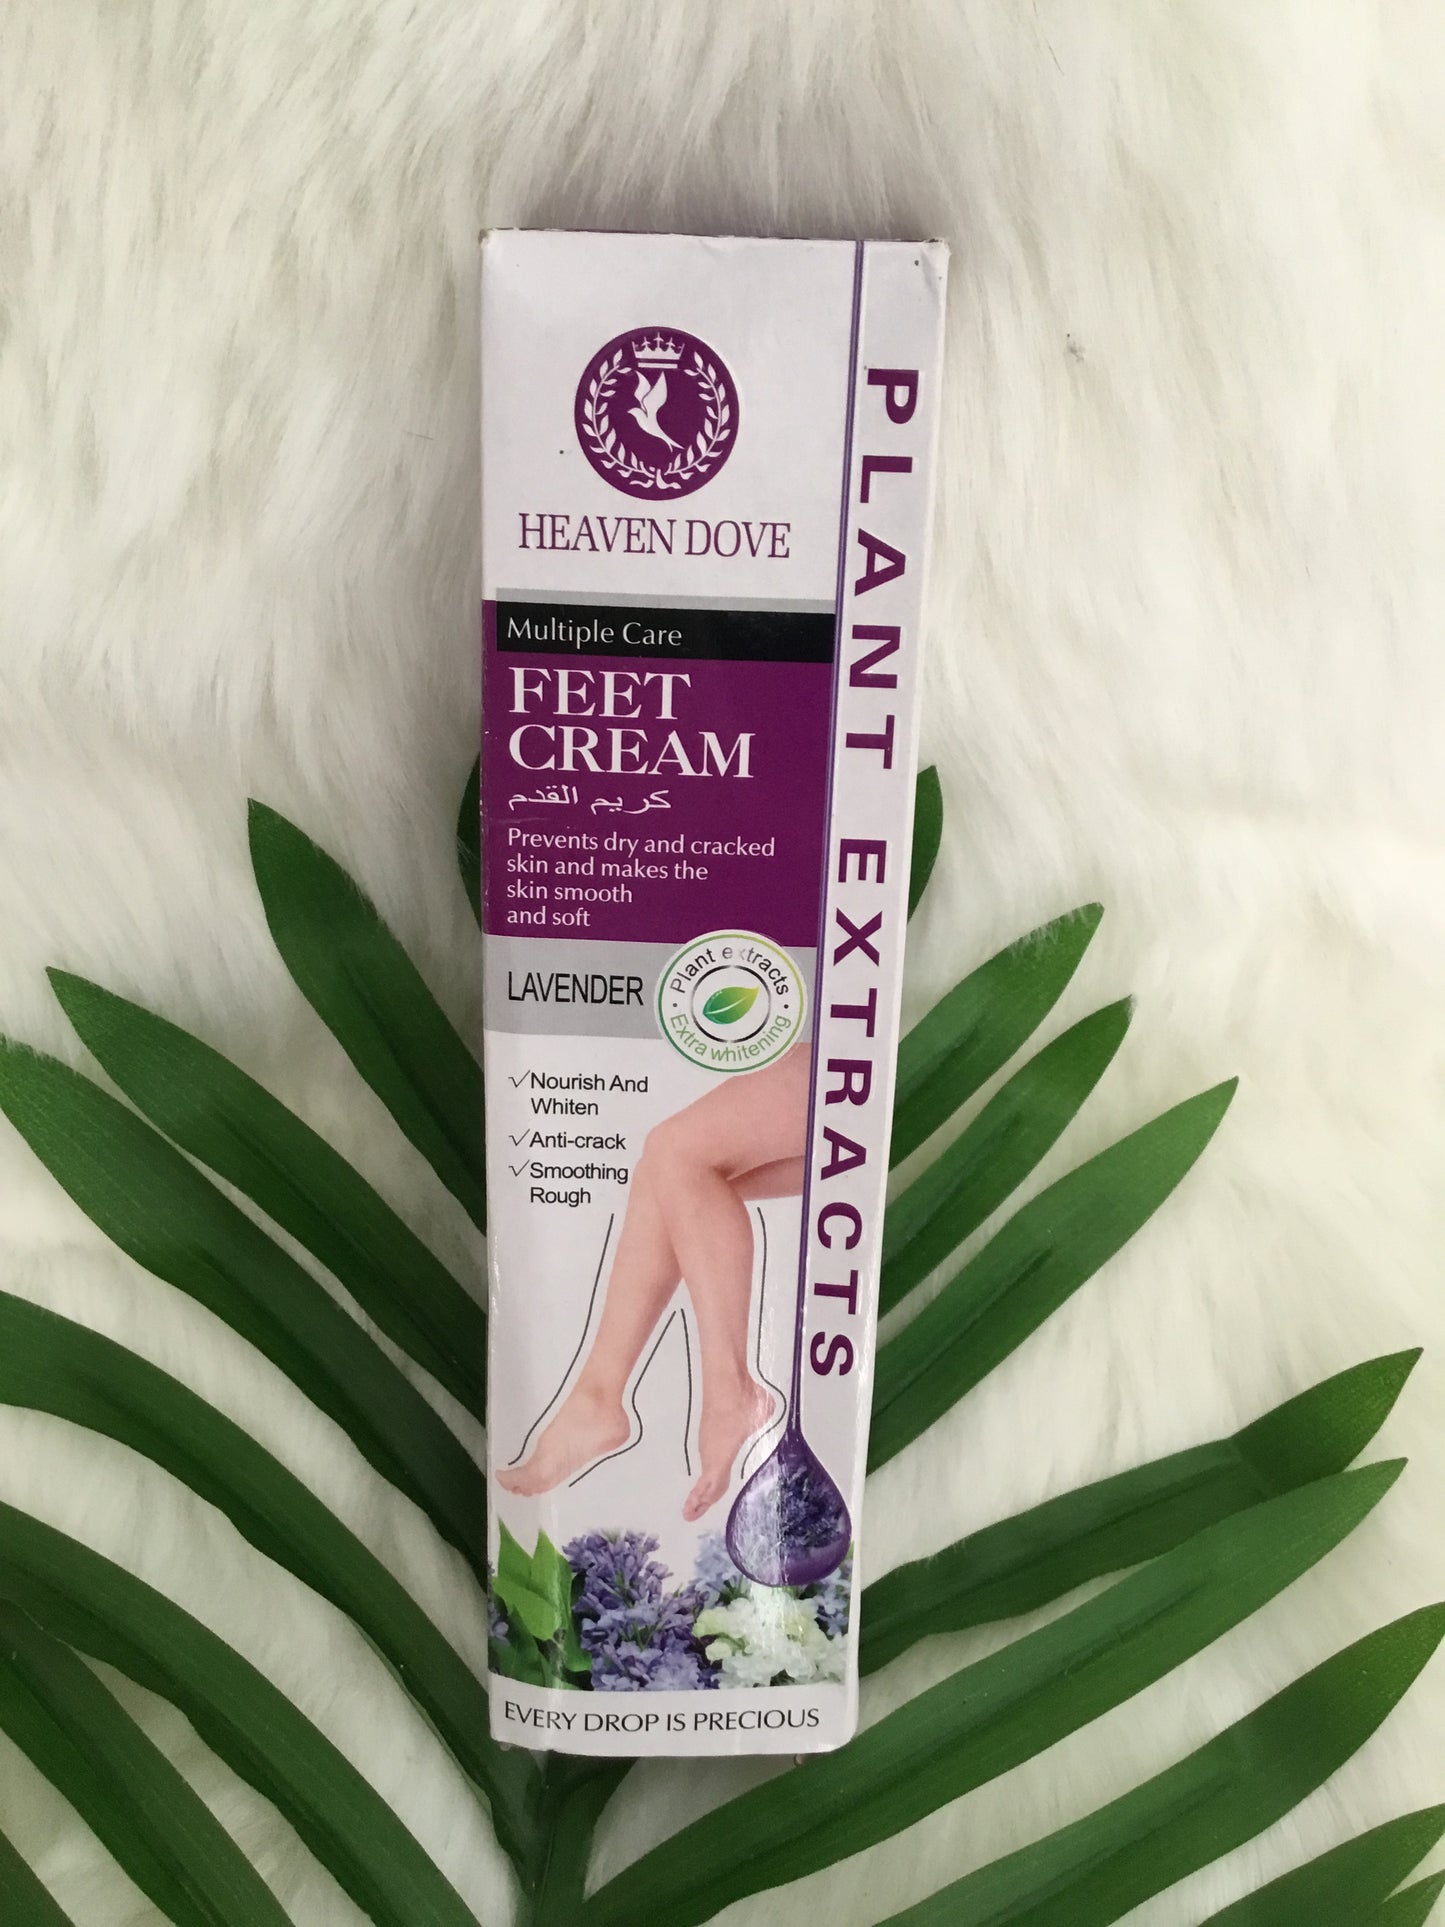 Crème pour les pieds soins multiples extra blanchissante à la lavande./Extra whitening multi-care foot cream with lavender.